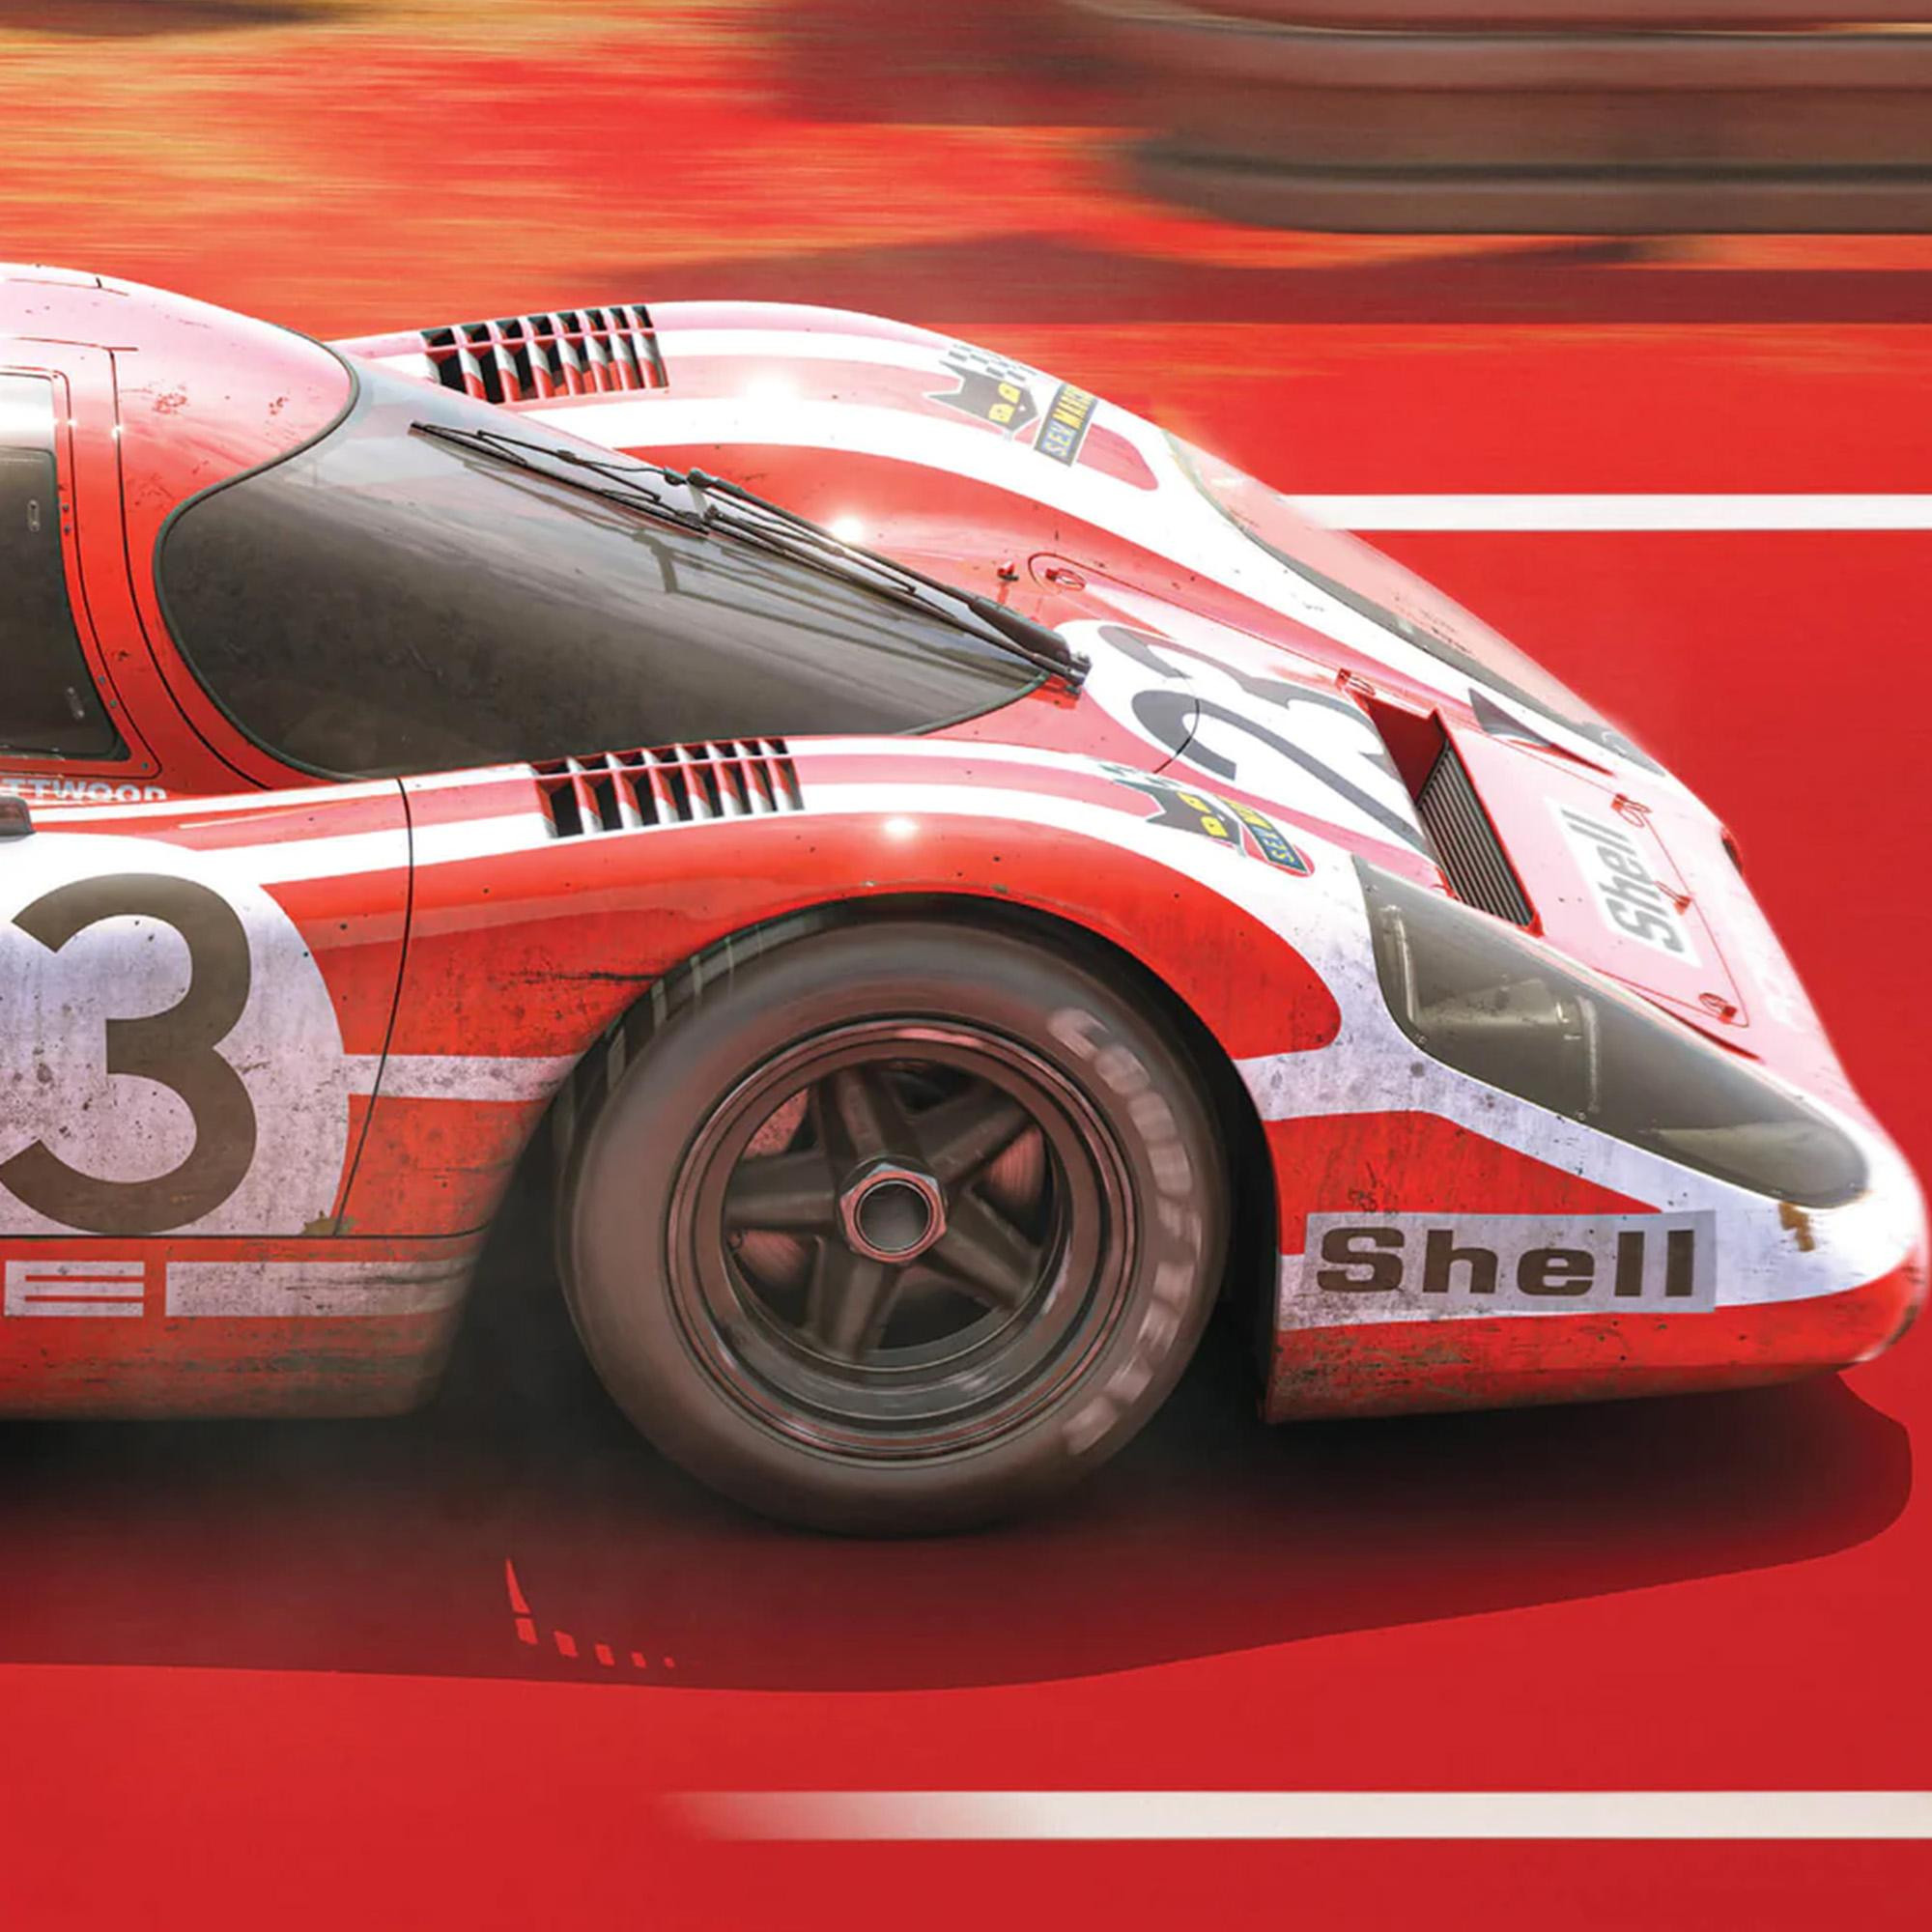 Le Mans Porsche Poster racing car 1970 Stock Photo - Alamy